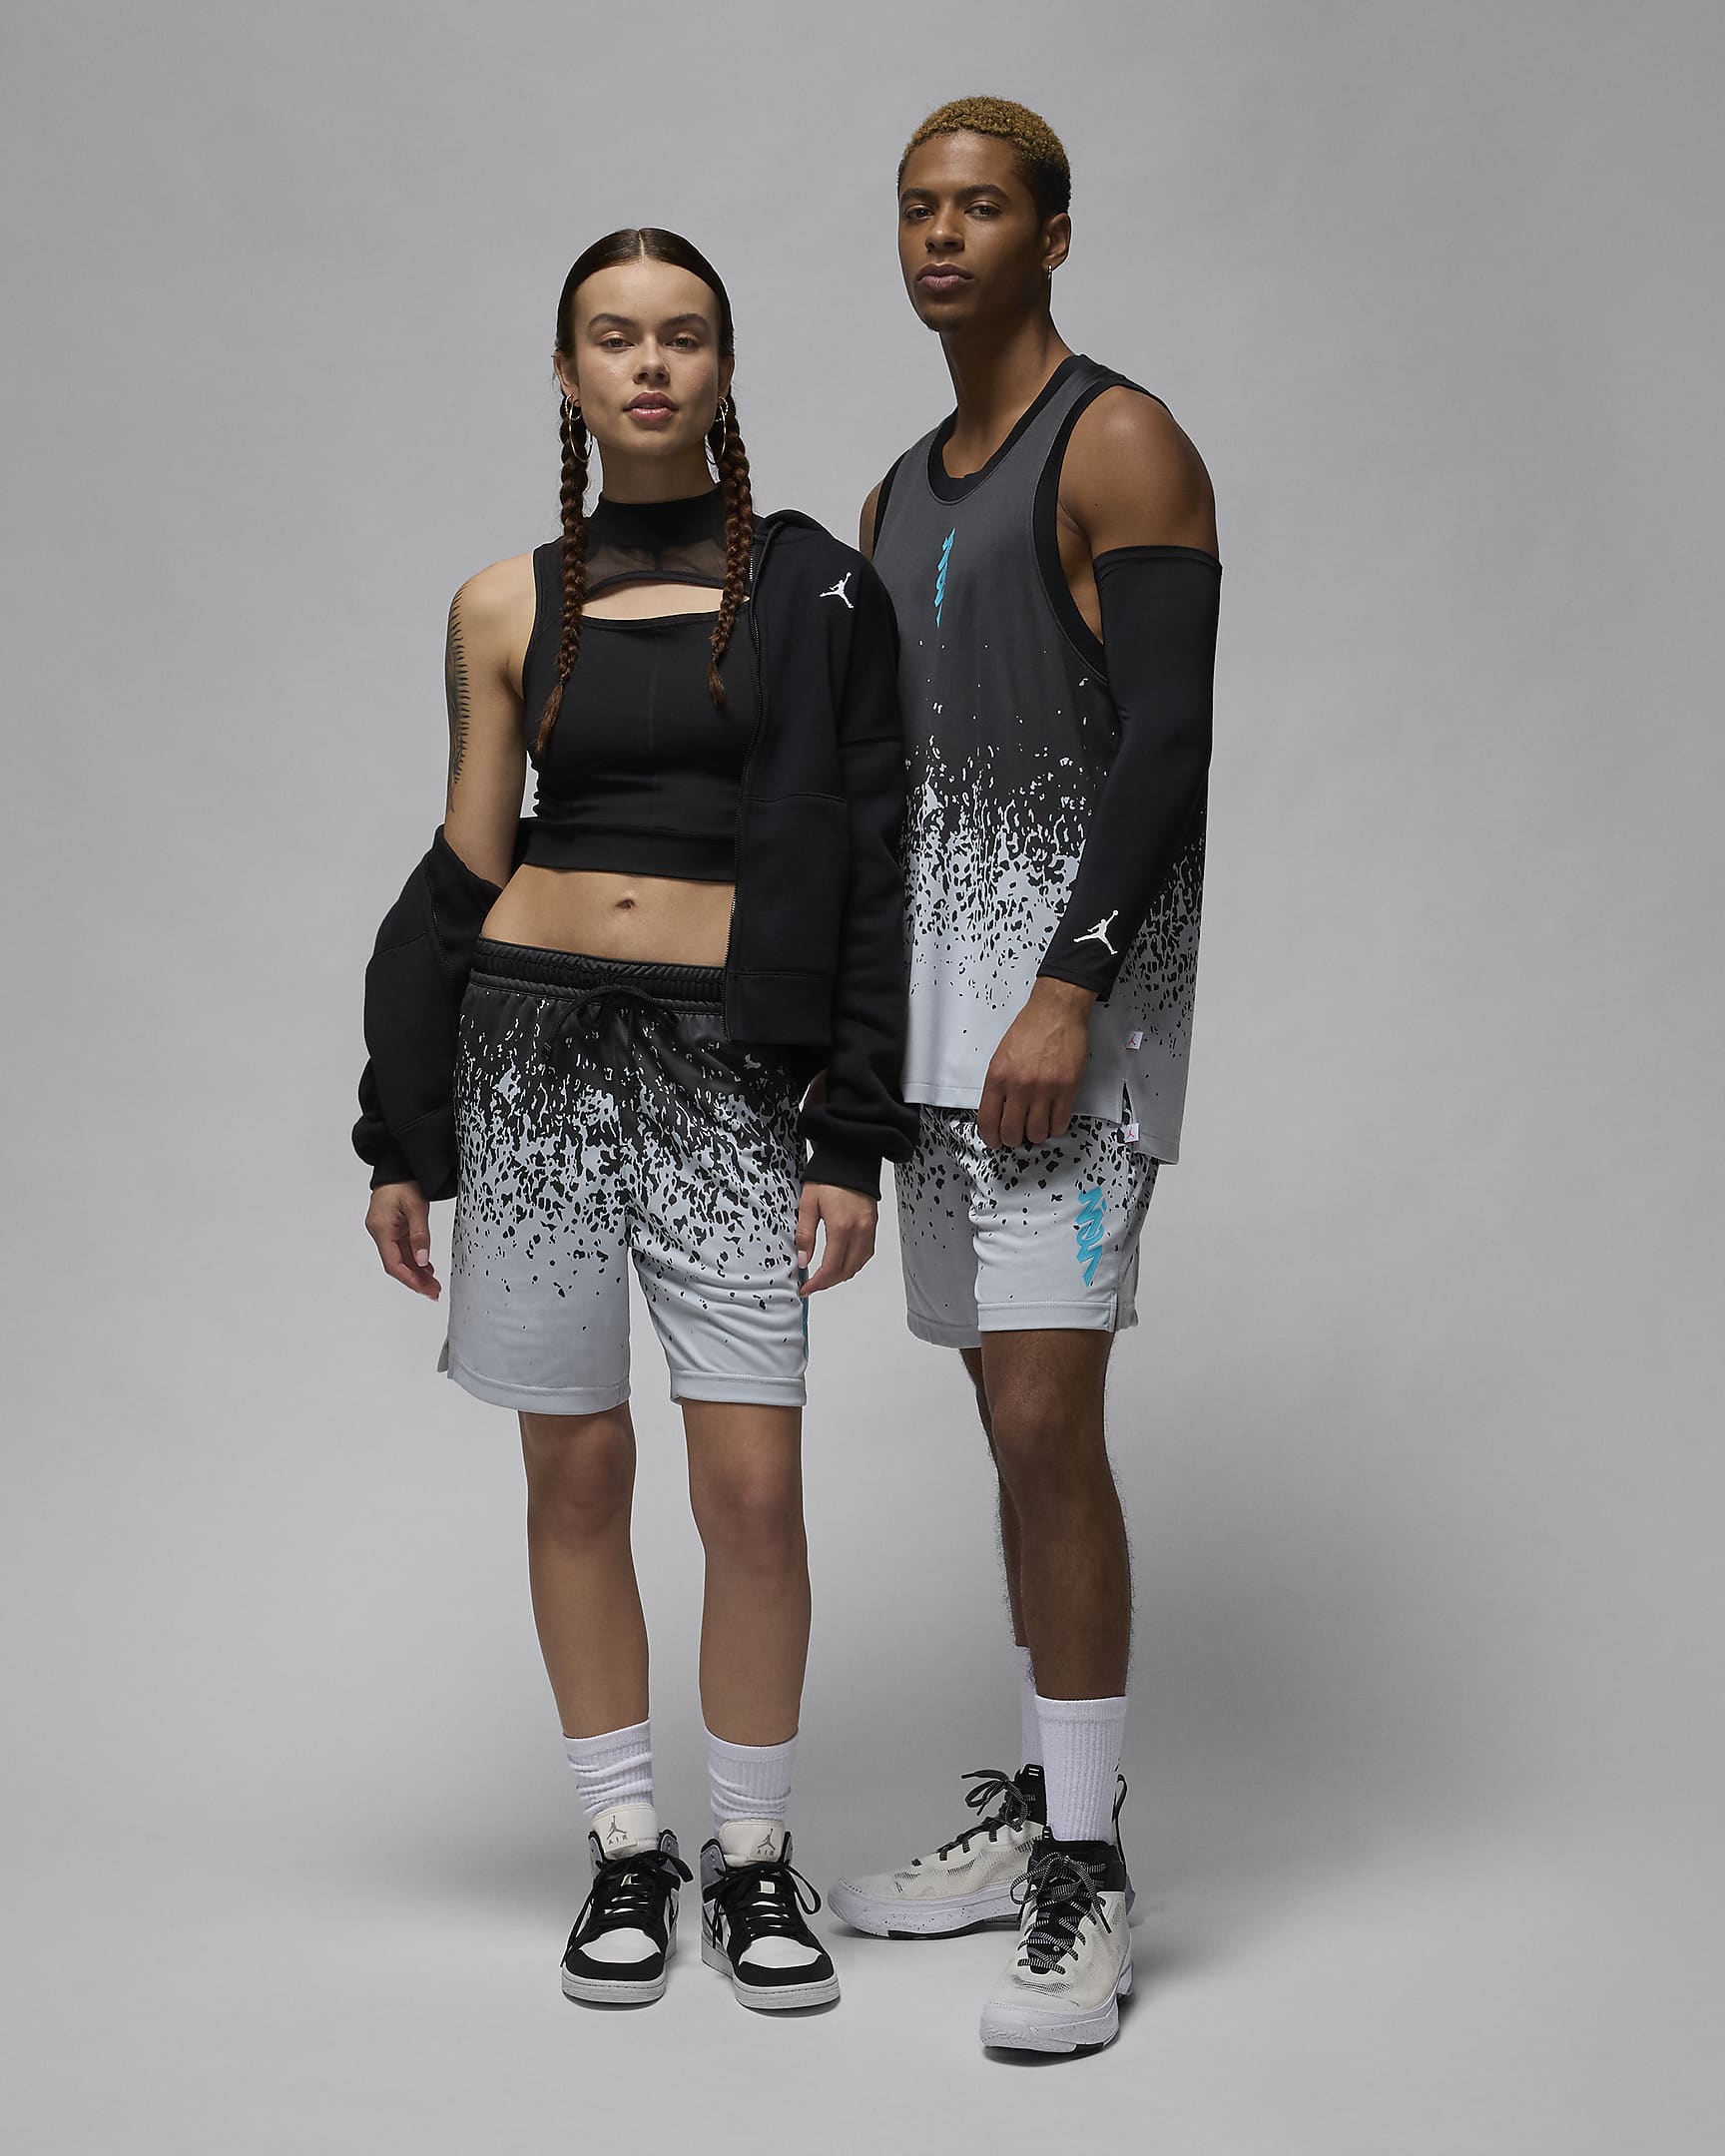 Zion Men's Shorts. Nike.com